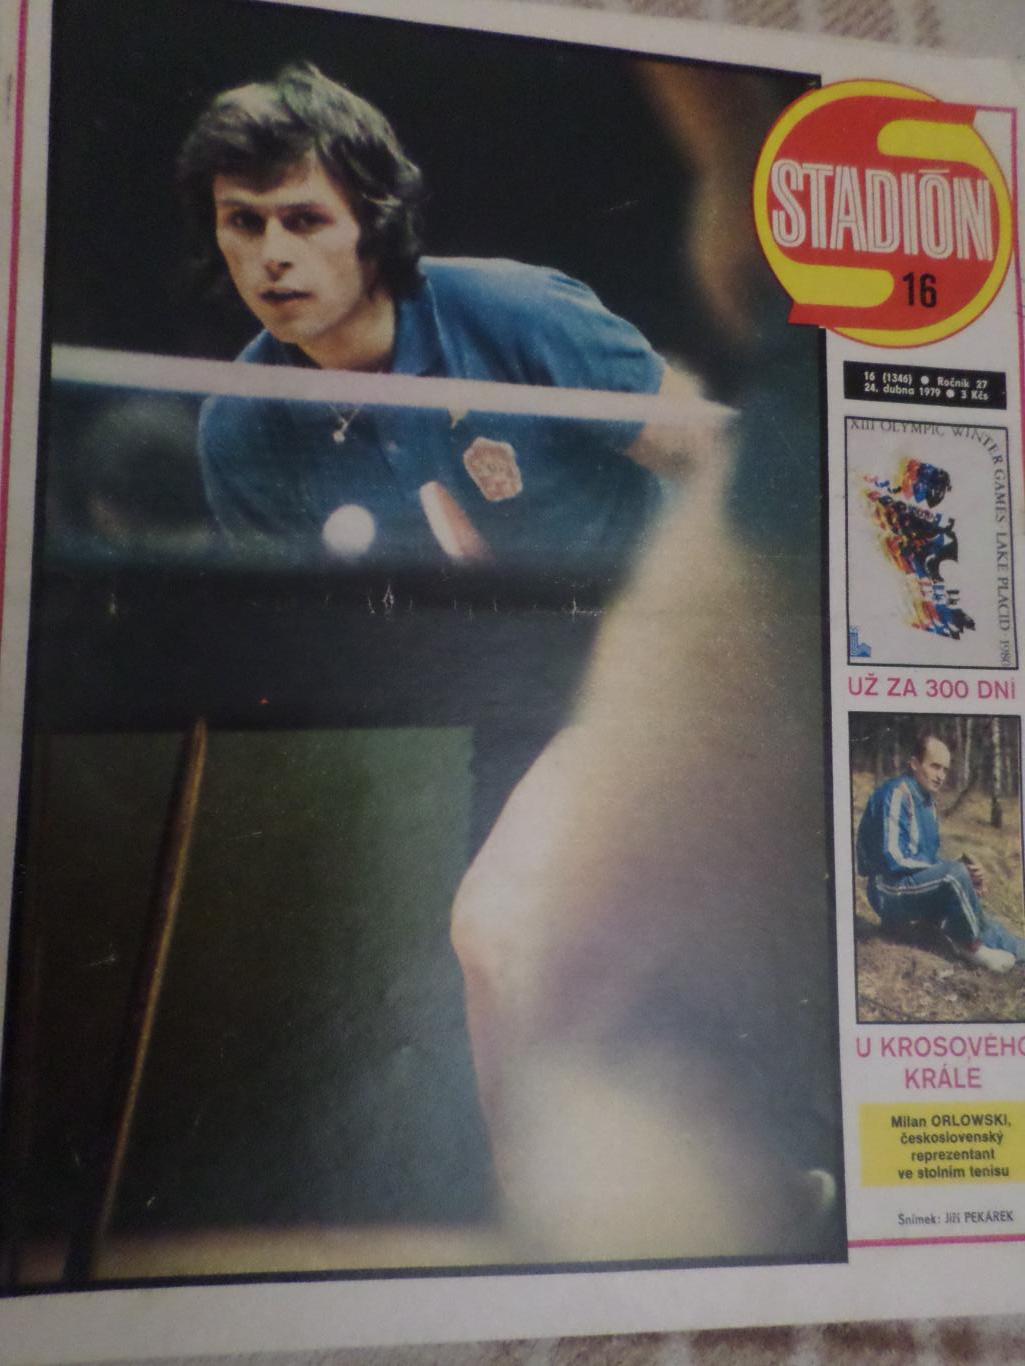 журнал Стадион Чехословакия № 16 1979 г постер ВК Братислава волейбол